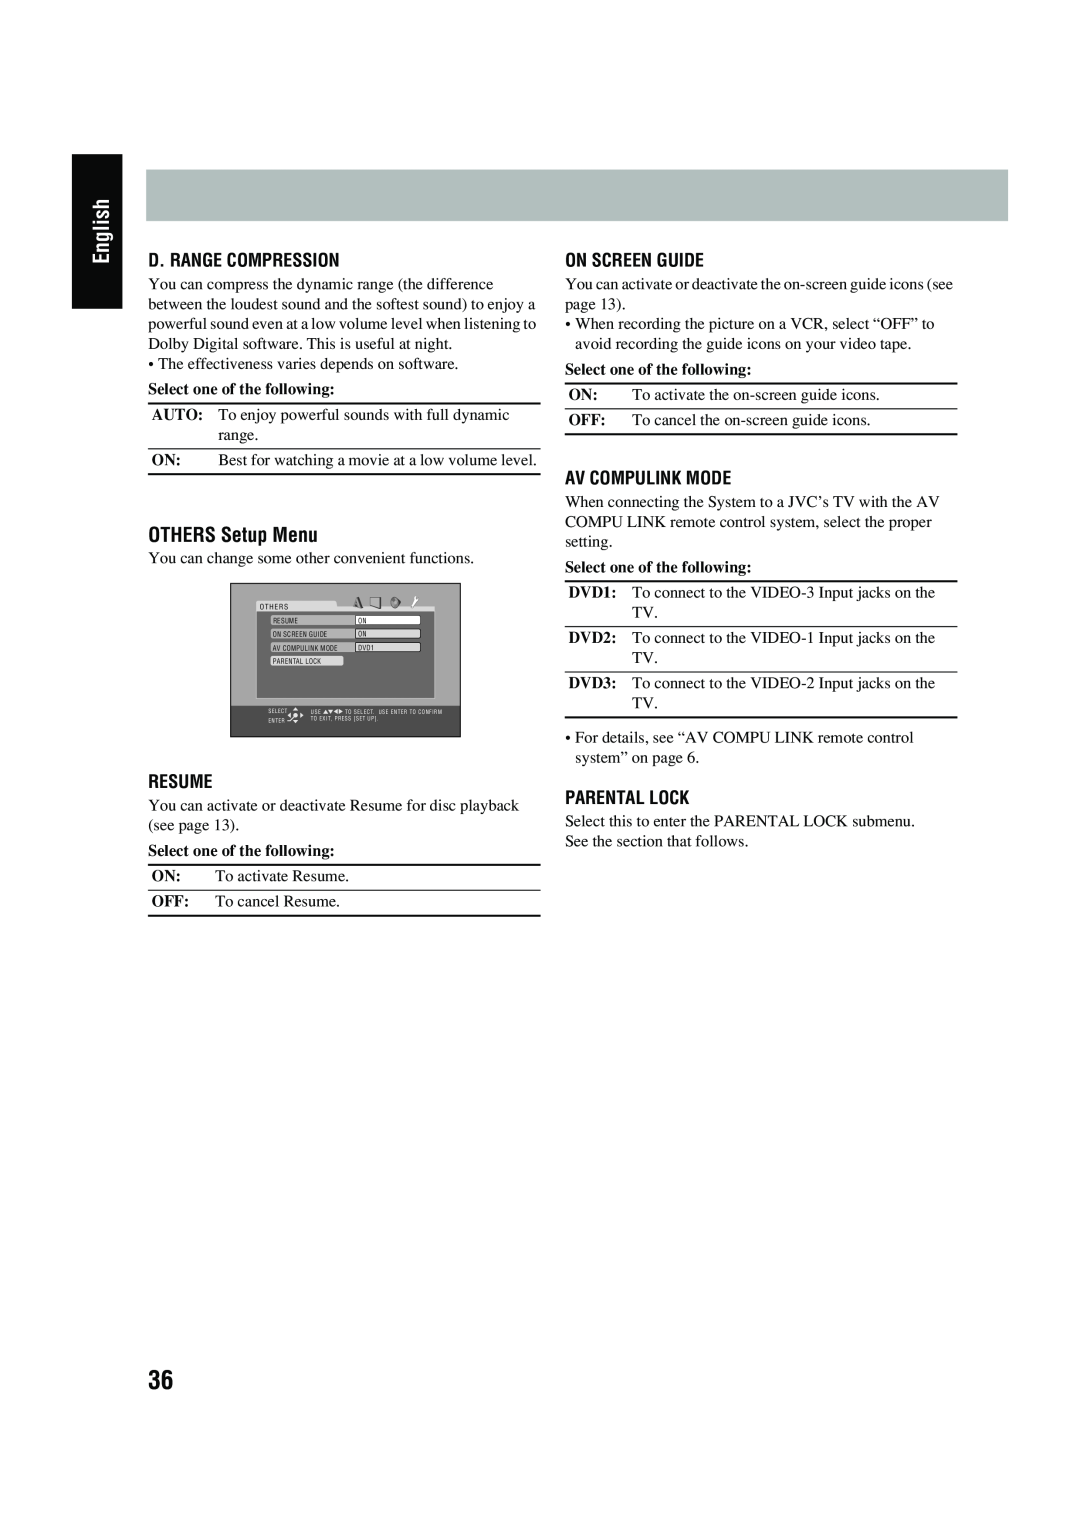 JVC UX-P450 OTHERS Setup Menu, D. Range Compression, Resume, On Screen Guide, Av Compulink Mode, Parental Lock, English 